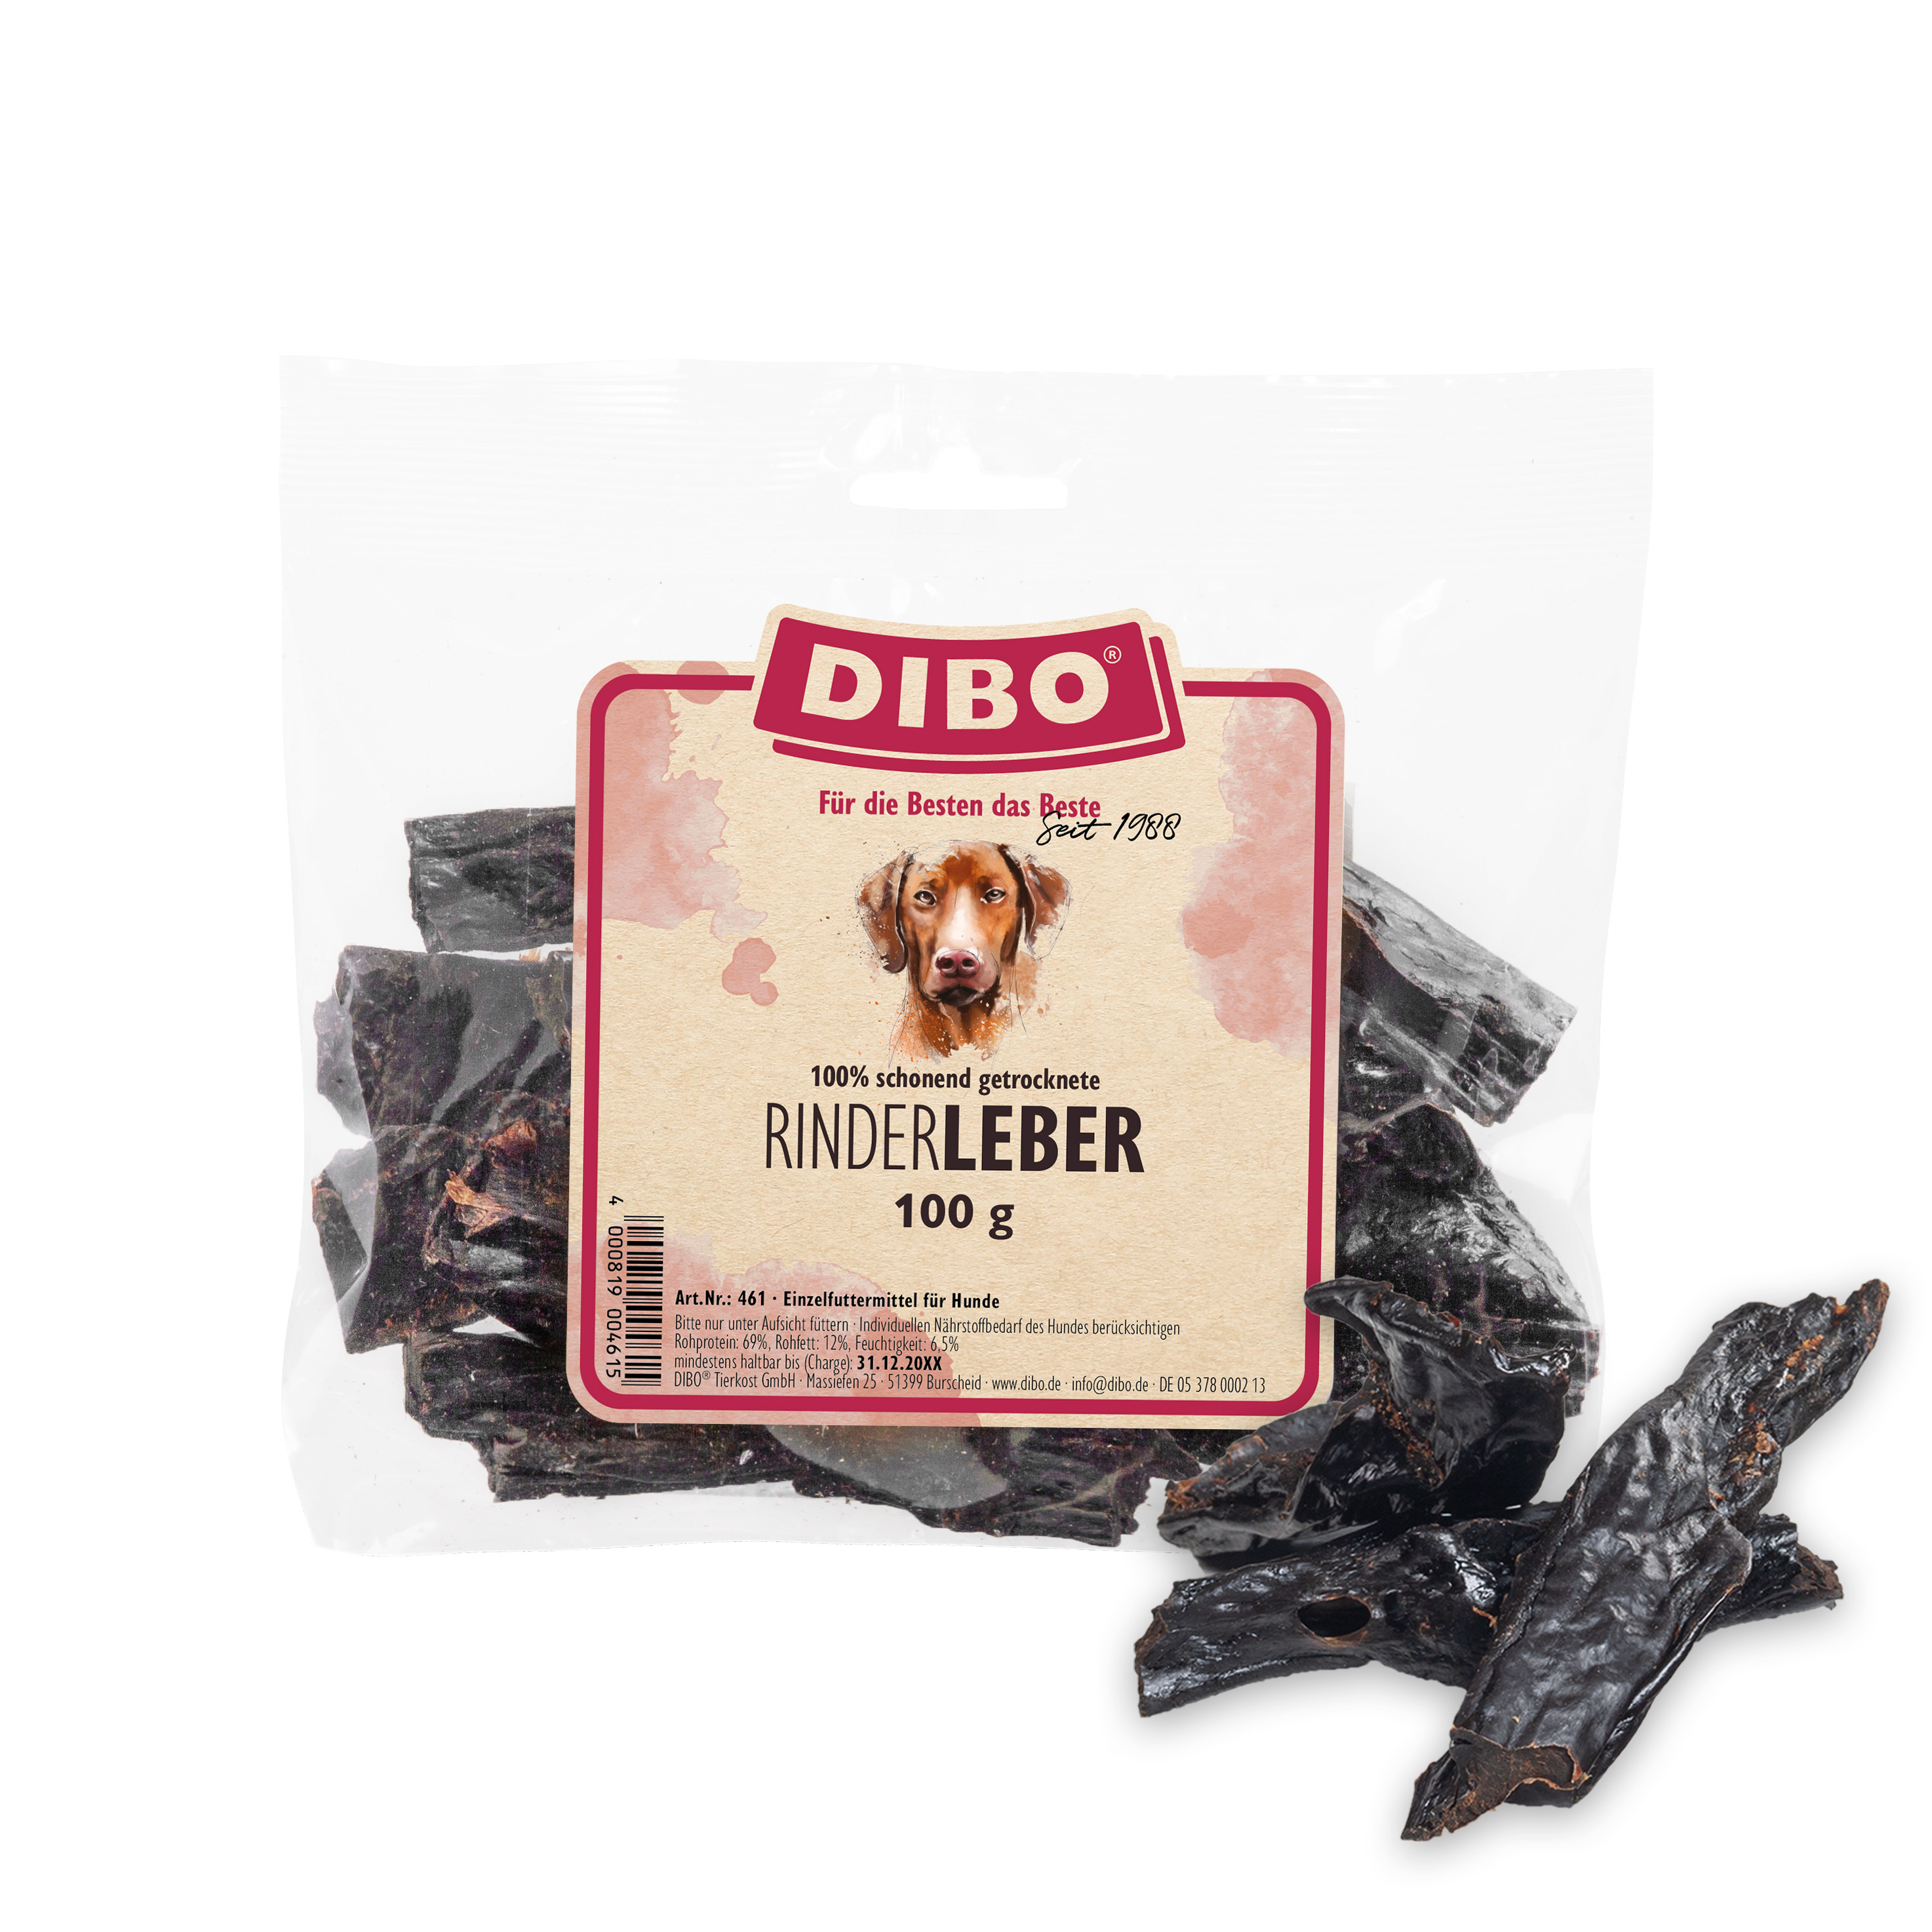 DIBO Rinder-Leber, 100g-Beutel